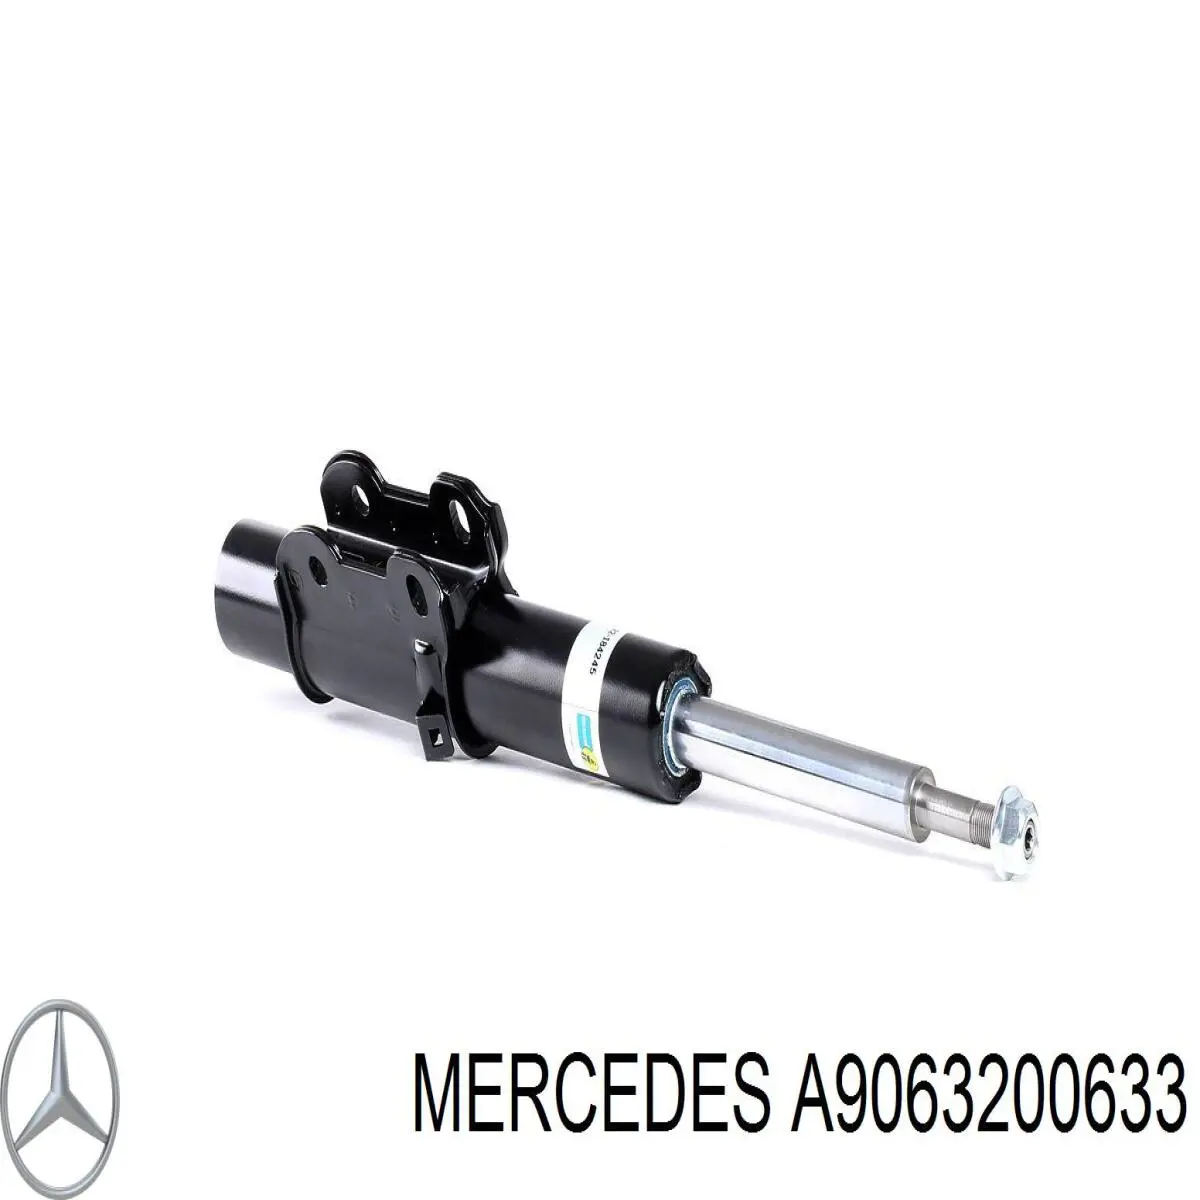 A9063200633 Mercedes amortiguador delantero